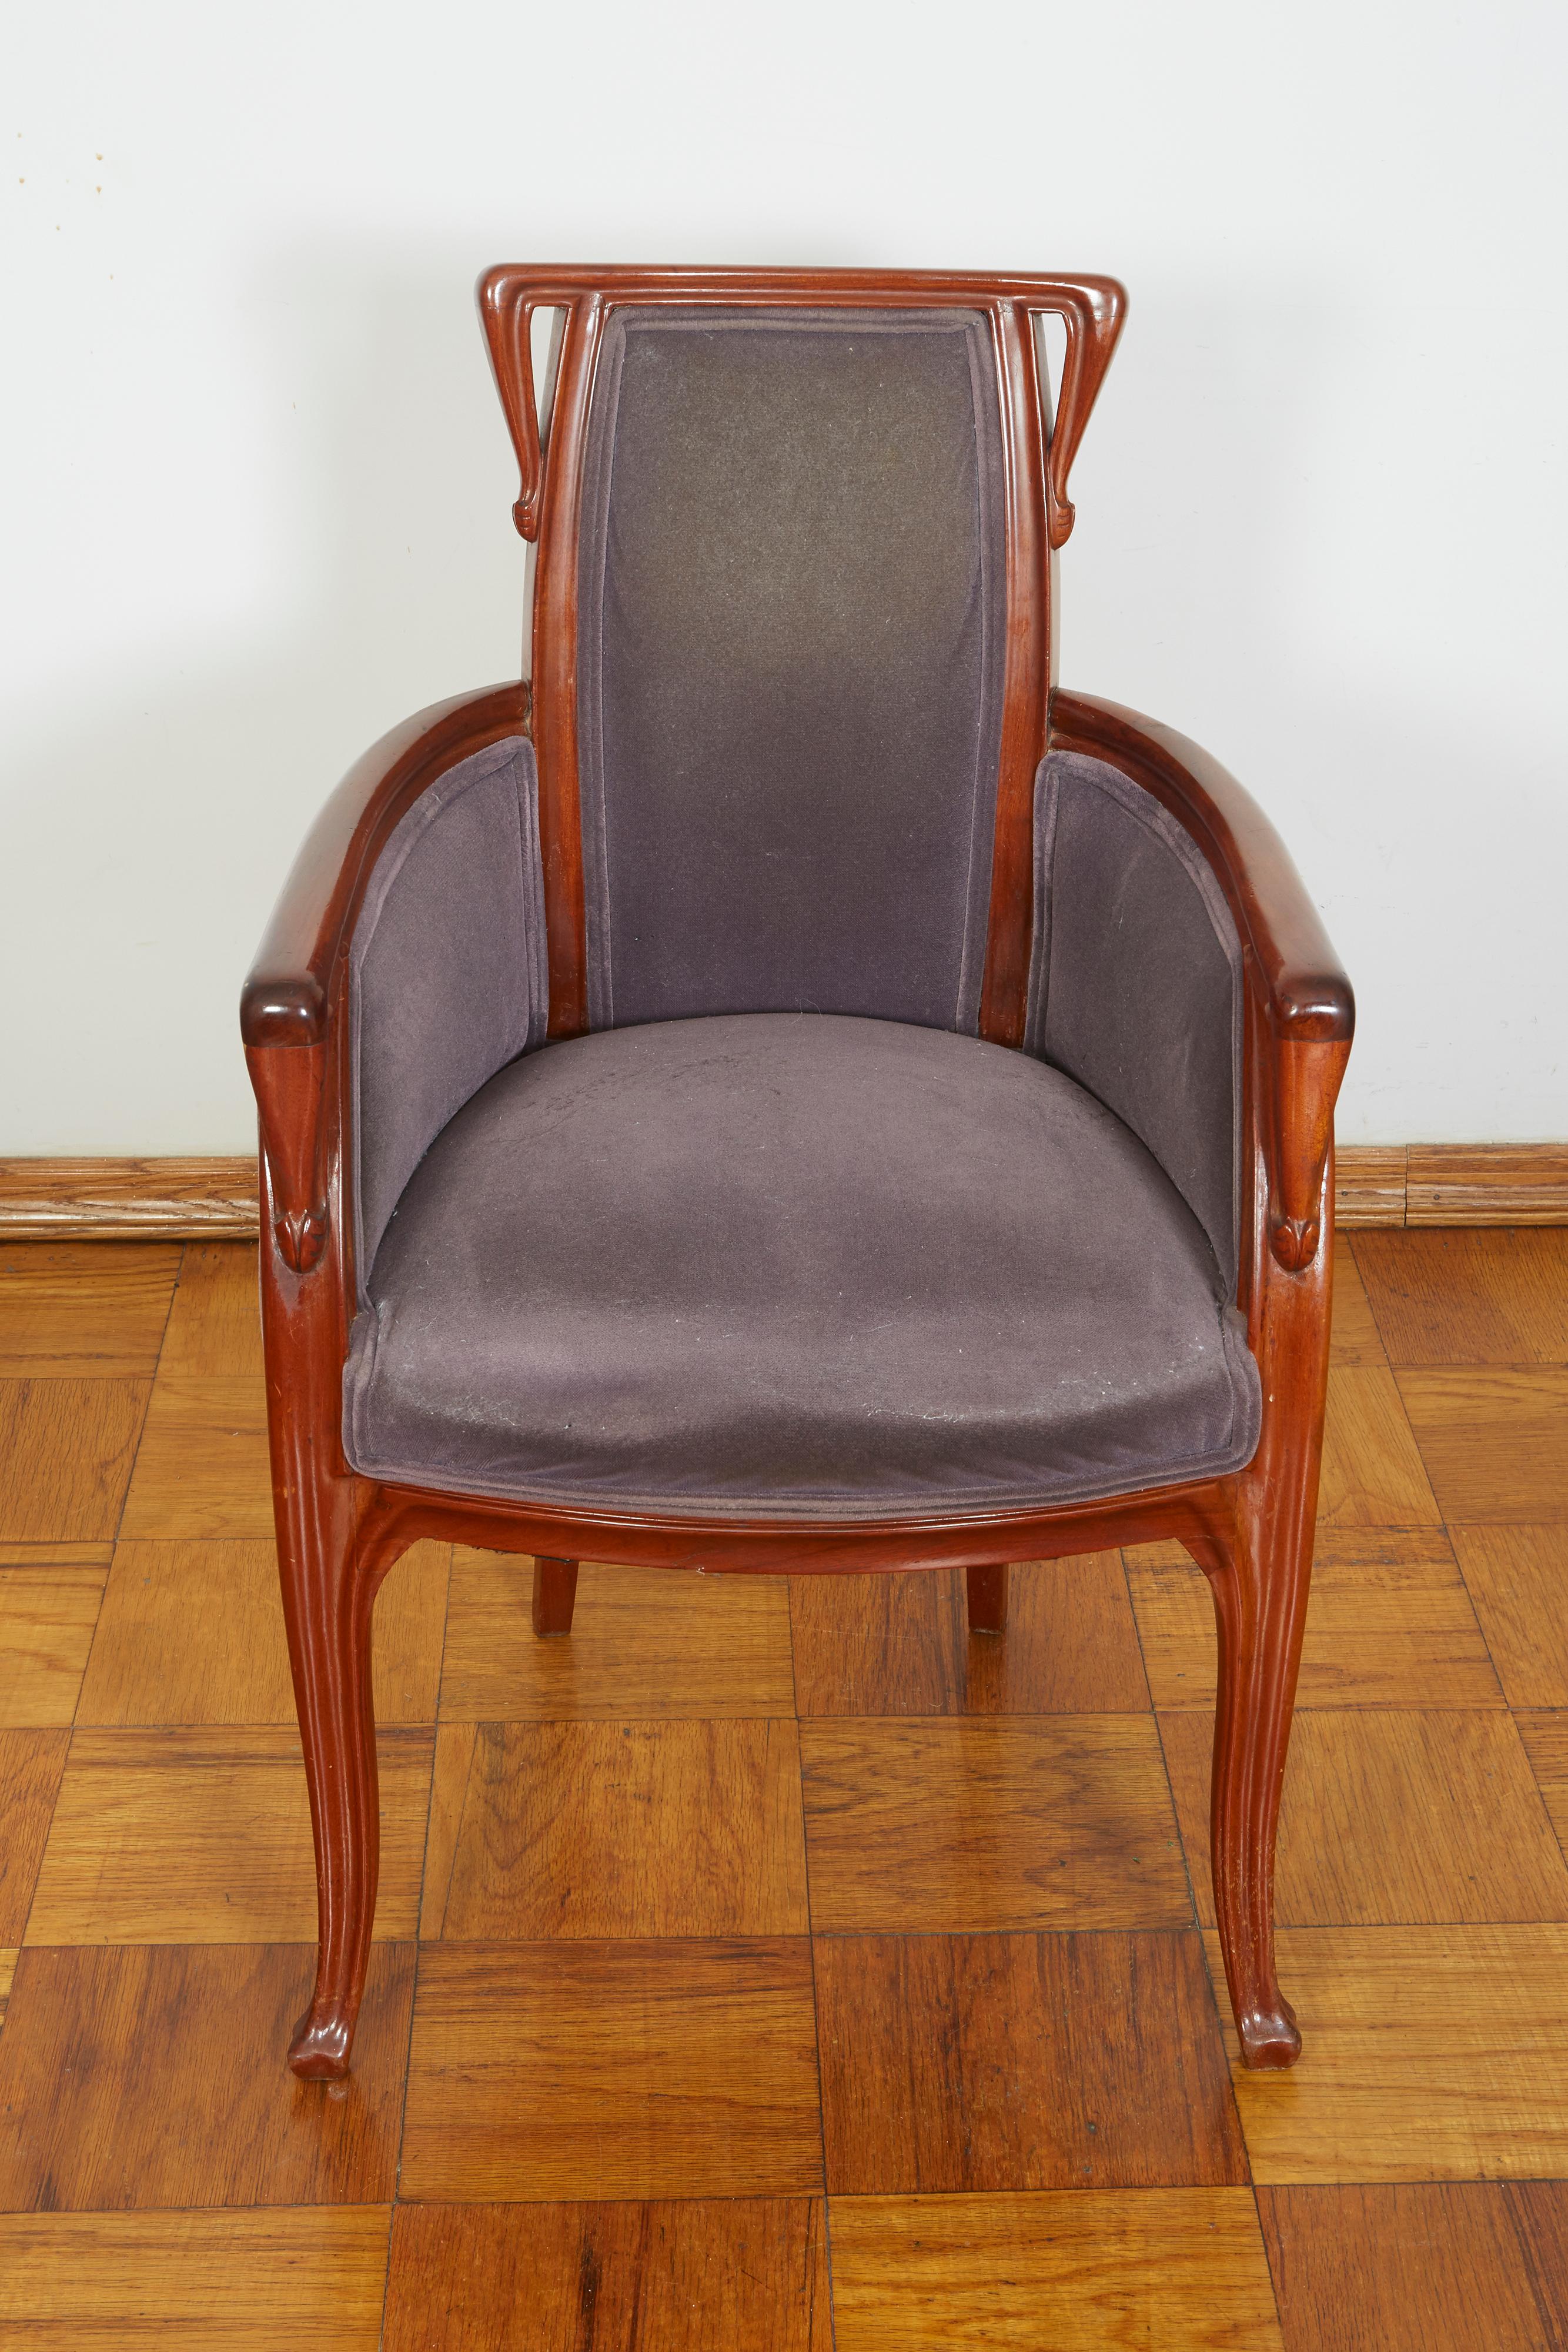 French Art Nouveau armchair by Louis Majorelle.
Measures: Width 22